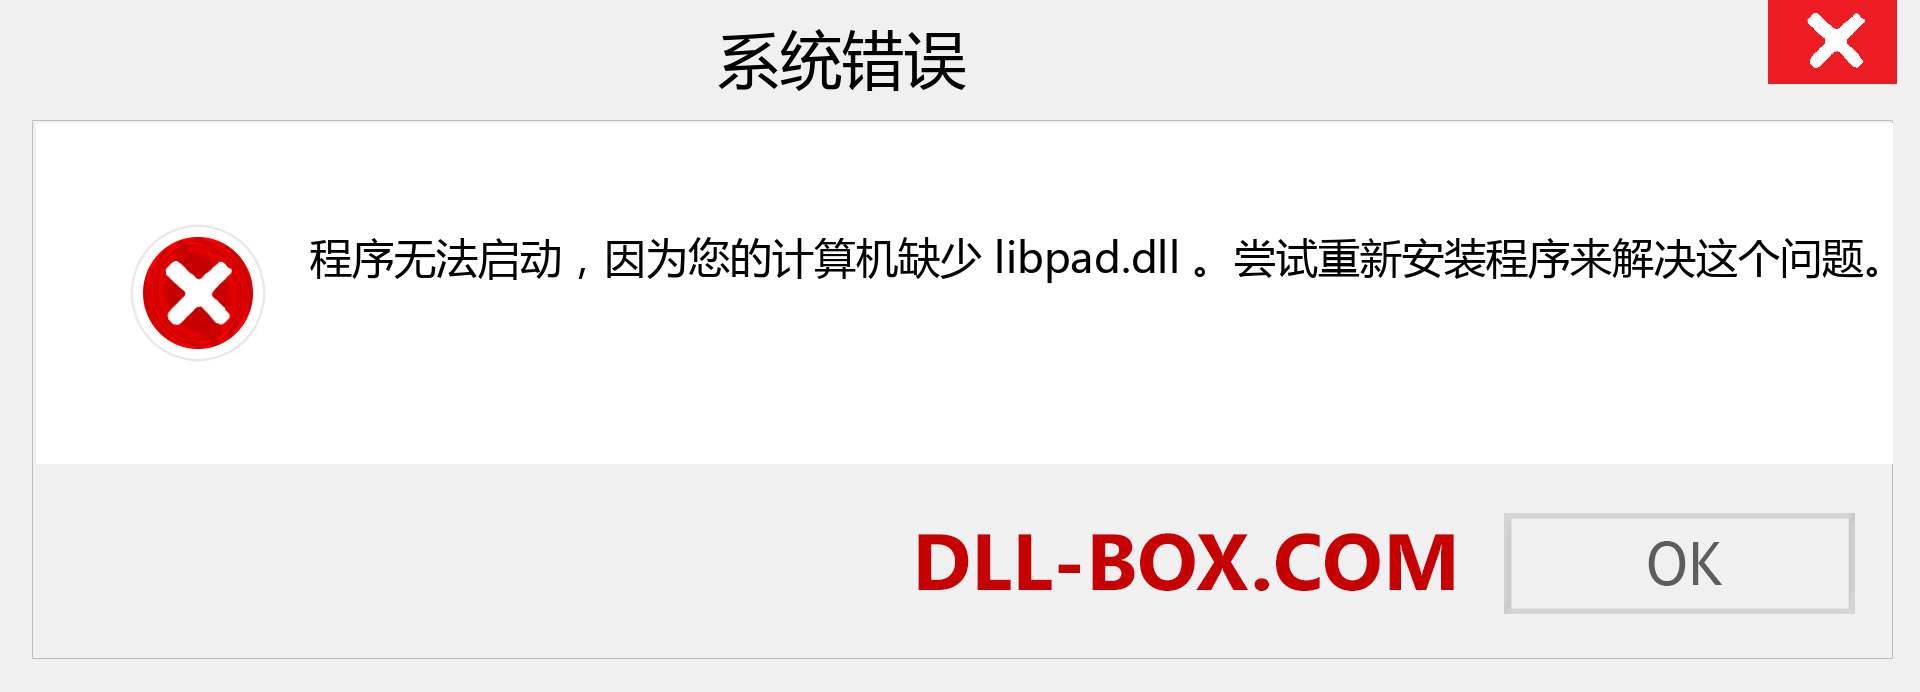 libpad.dll 文件丢失？。 适用于 Windows 7、8、10 的下载 - 修复 Windows、照片、图像上的 libpad dll 丢失错误